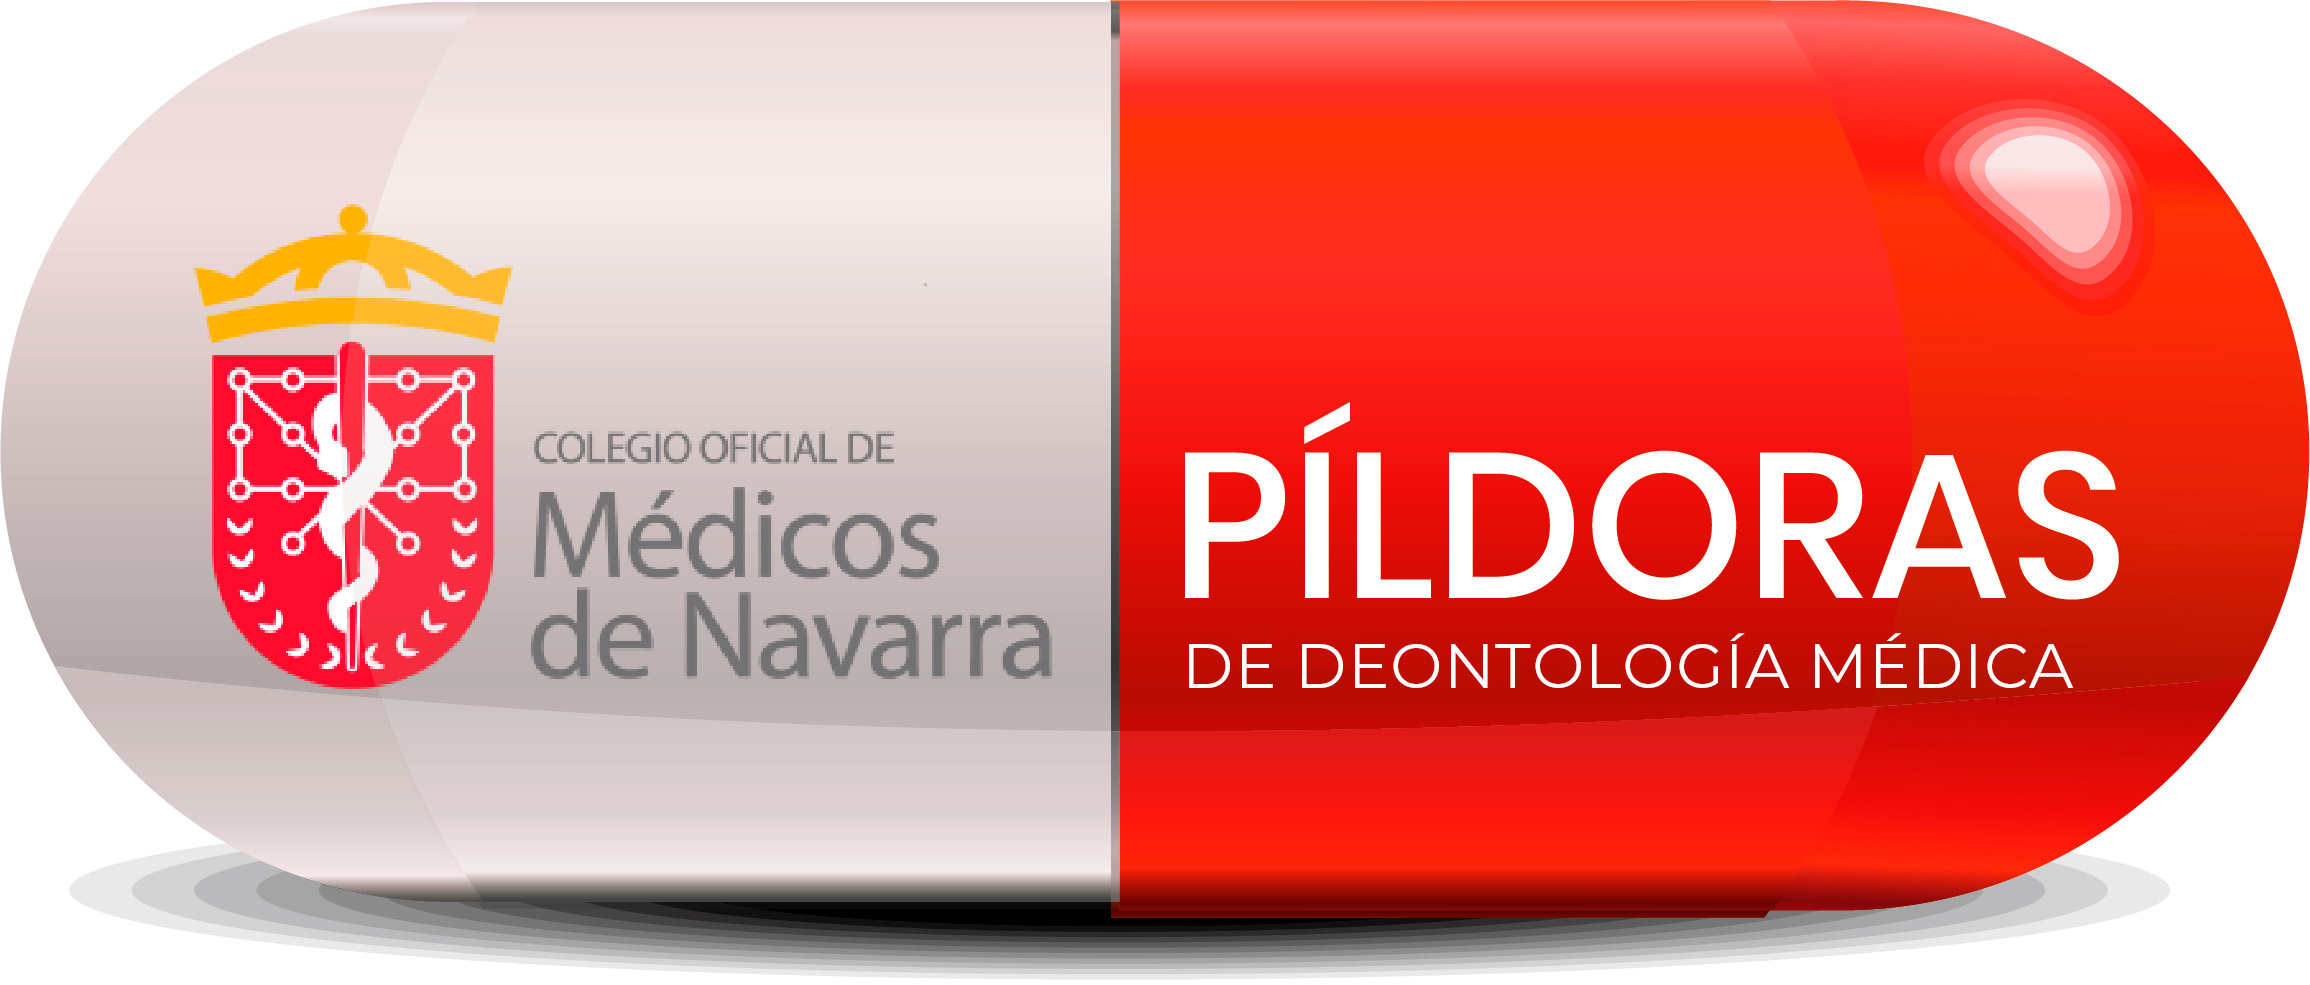 Campaña Píldoras de Deontología Médica: Dirigida a la profesión médica sobre el nuevo Código de Deontología.